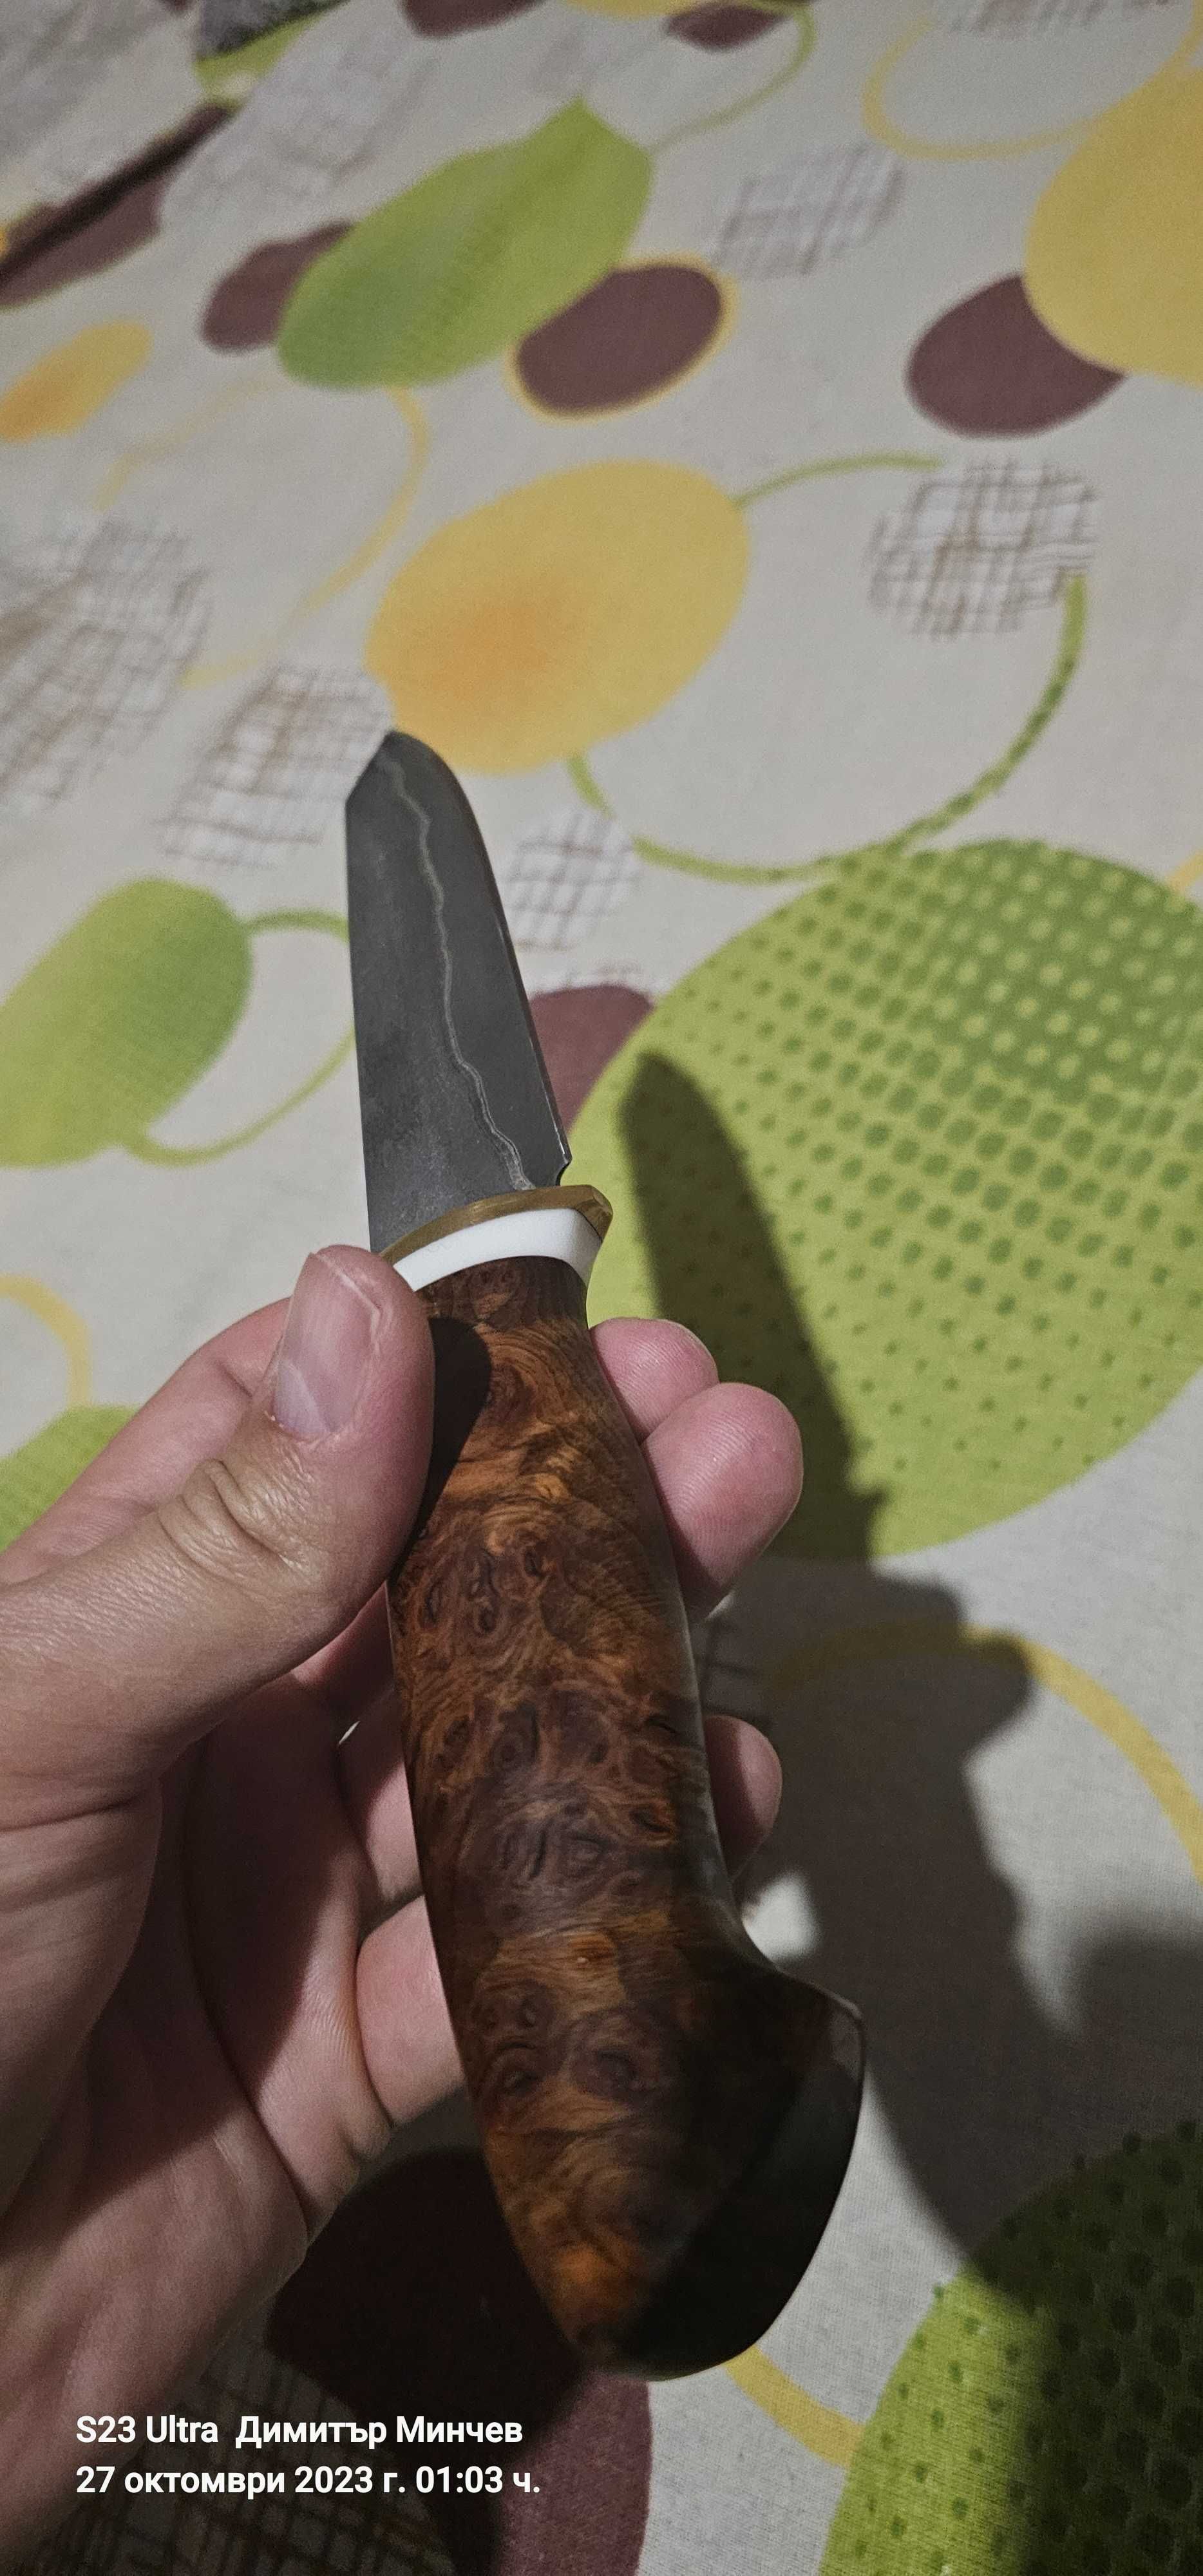 Нож от стомана REX121 В ЛАМИНАТ